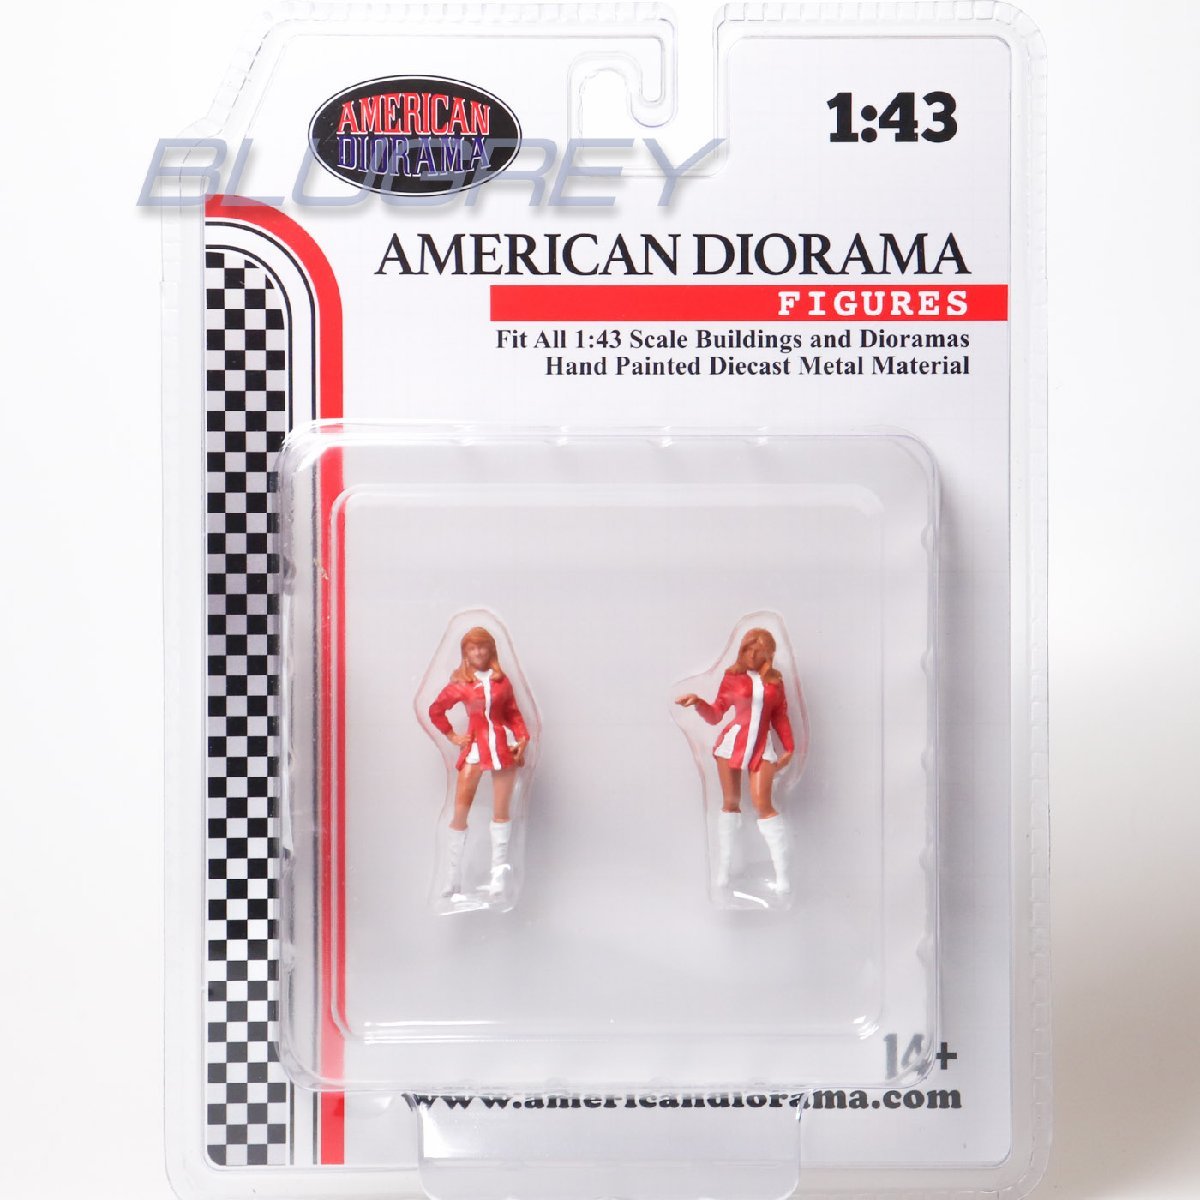 アメリカン ジオラマ 1/43 レースデイ セット 6 フィギア American Diorama Race Day Metal Figures Setの画像1